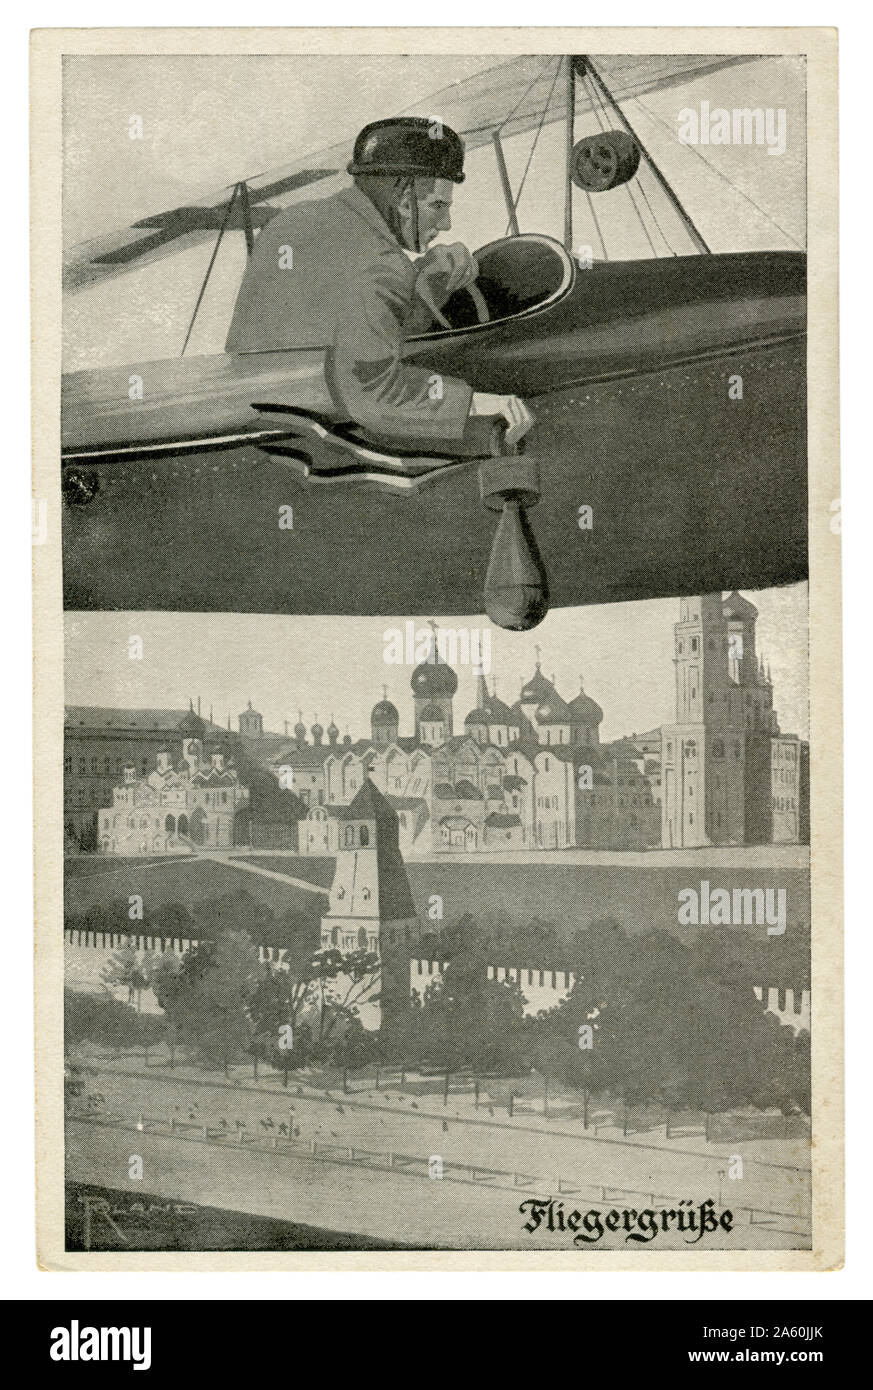 Carte postale historique allemand : pilote allemand sur un avion tombe une bombe sur le Kremlin à Moscou, la capitale de l'Empire russe, la première guerre mondiale 1916 Banque D'Images